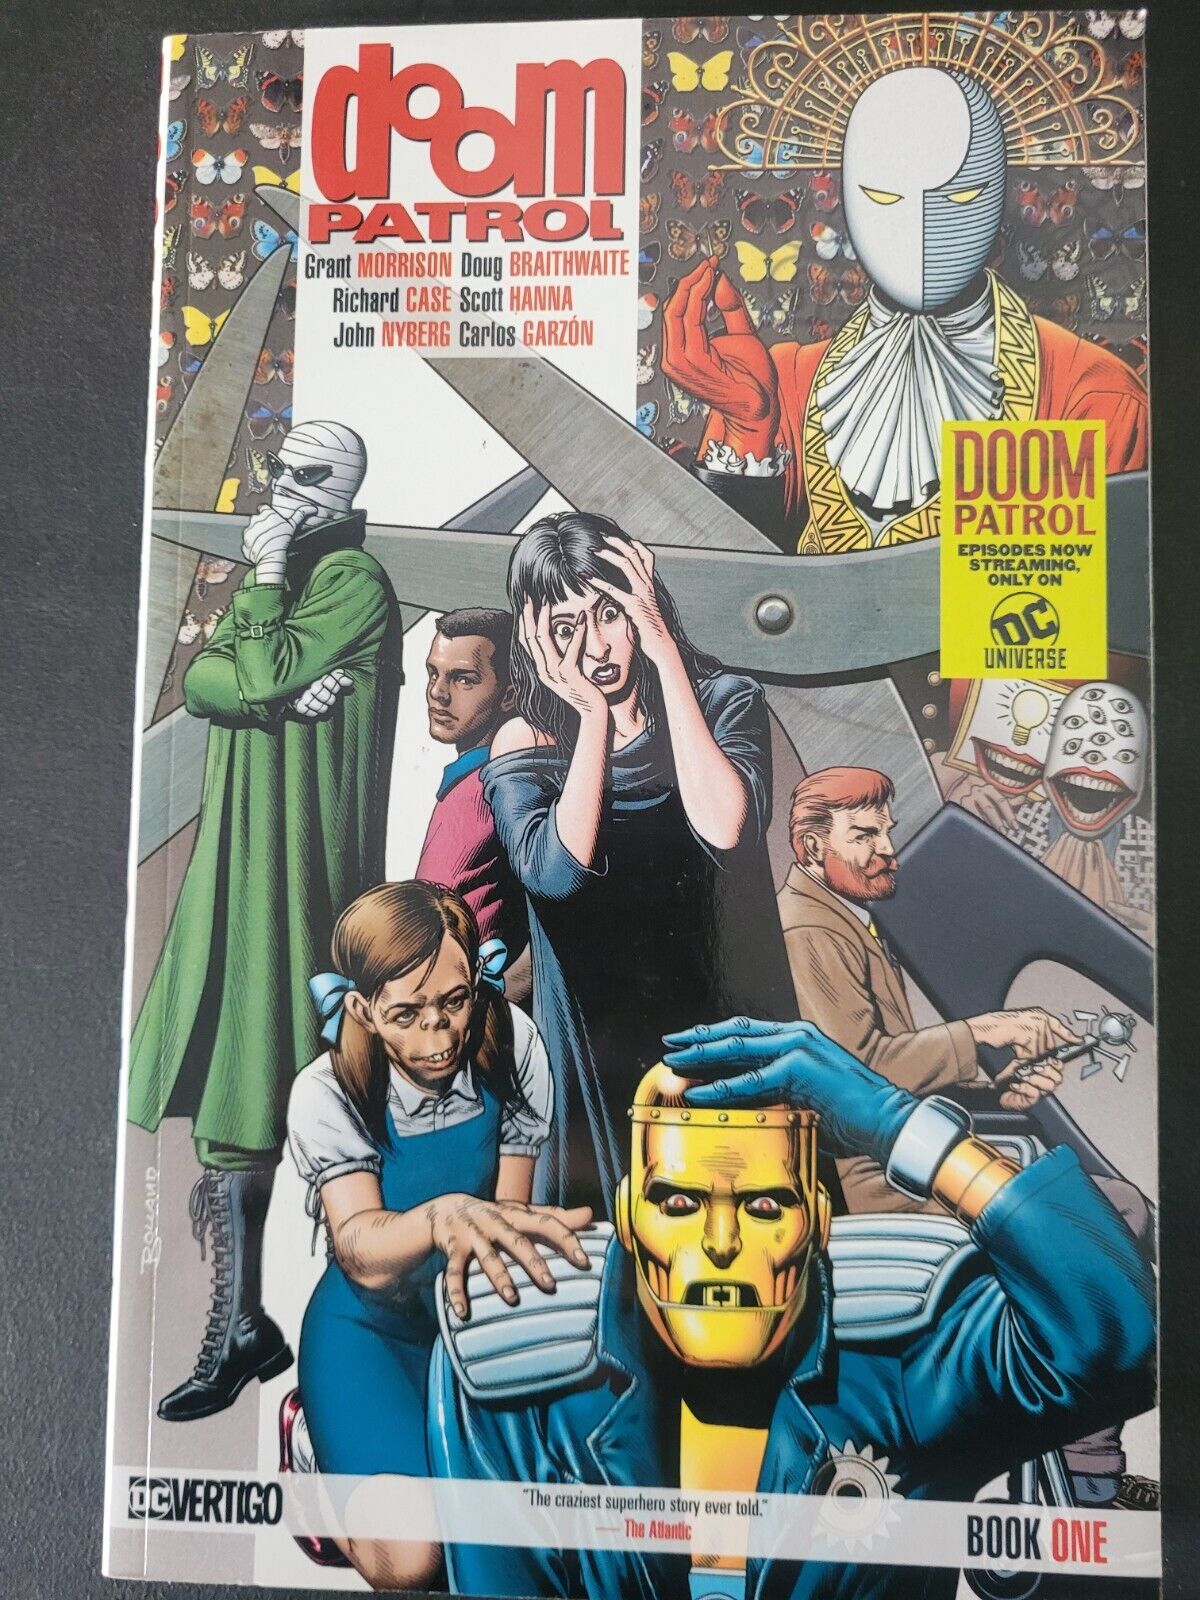 DOOM PATROL Vol 1 TPB 2016 VERTIGO DC COMICS GRANT MORRISON NEW UNREAD